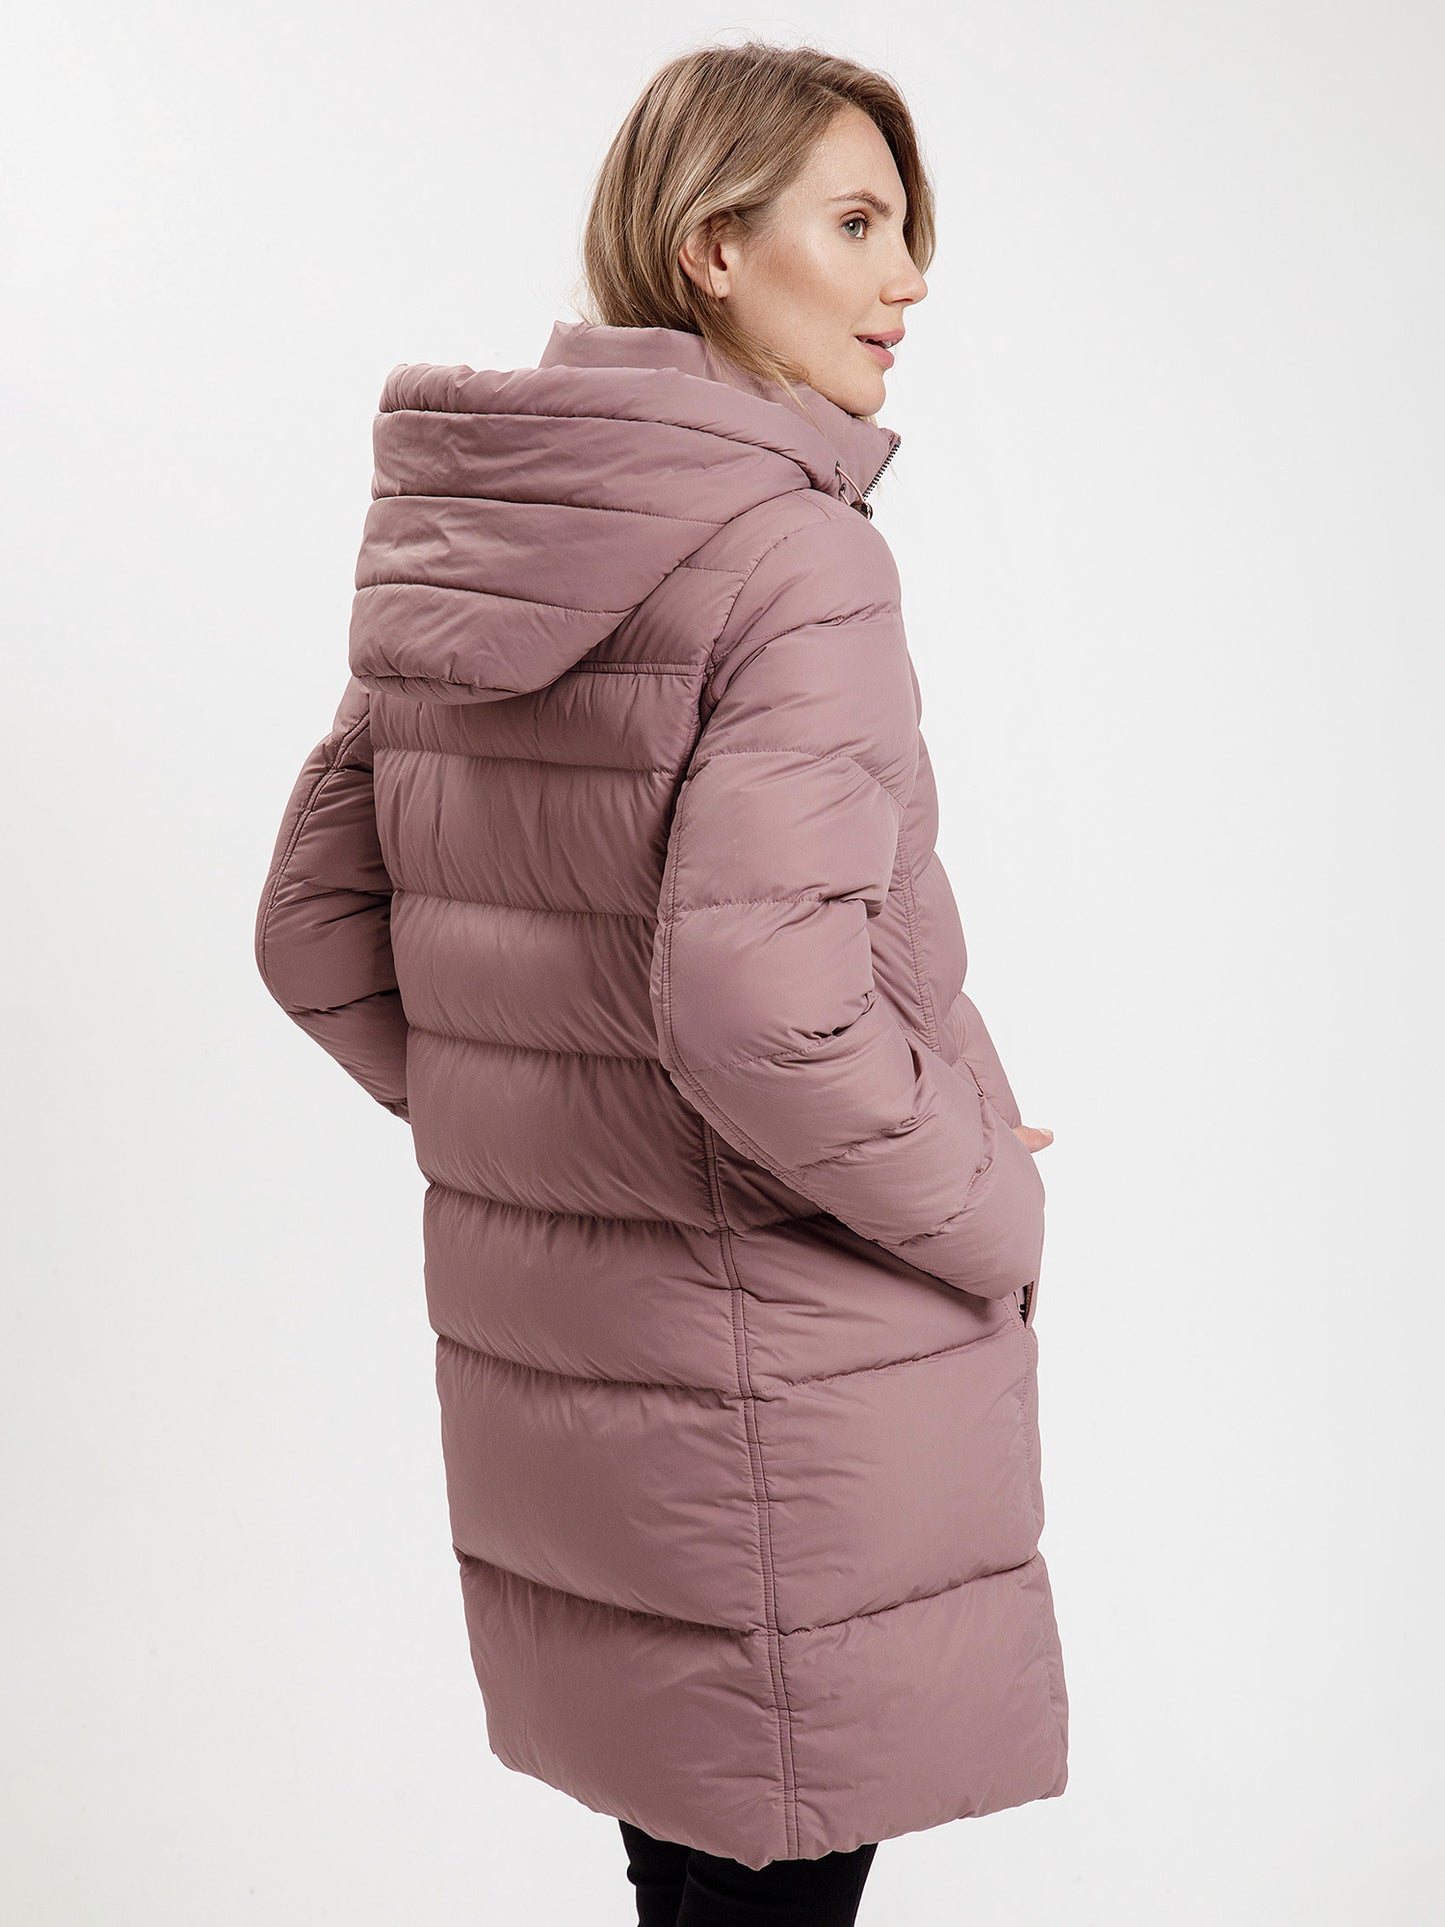 Women's regular short coat in pink